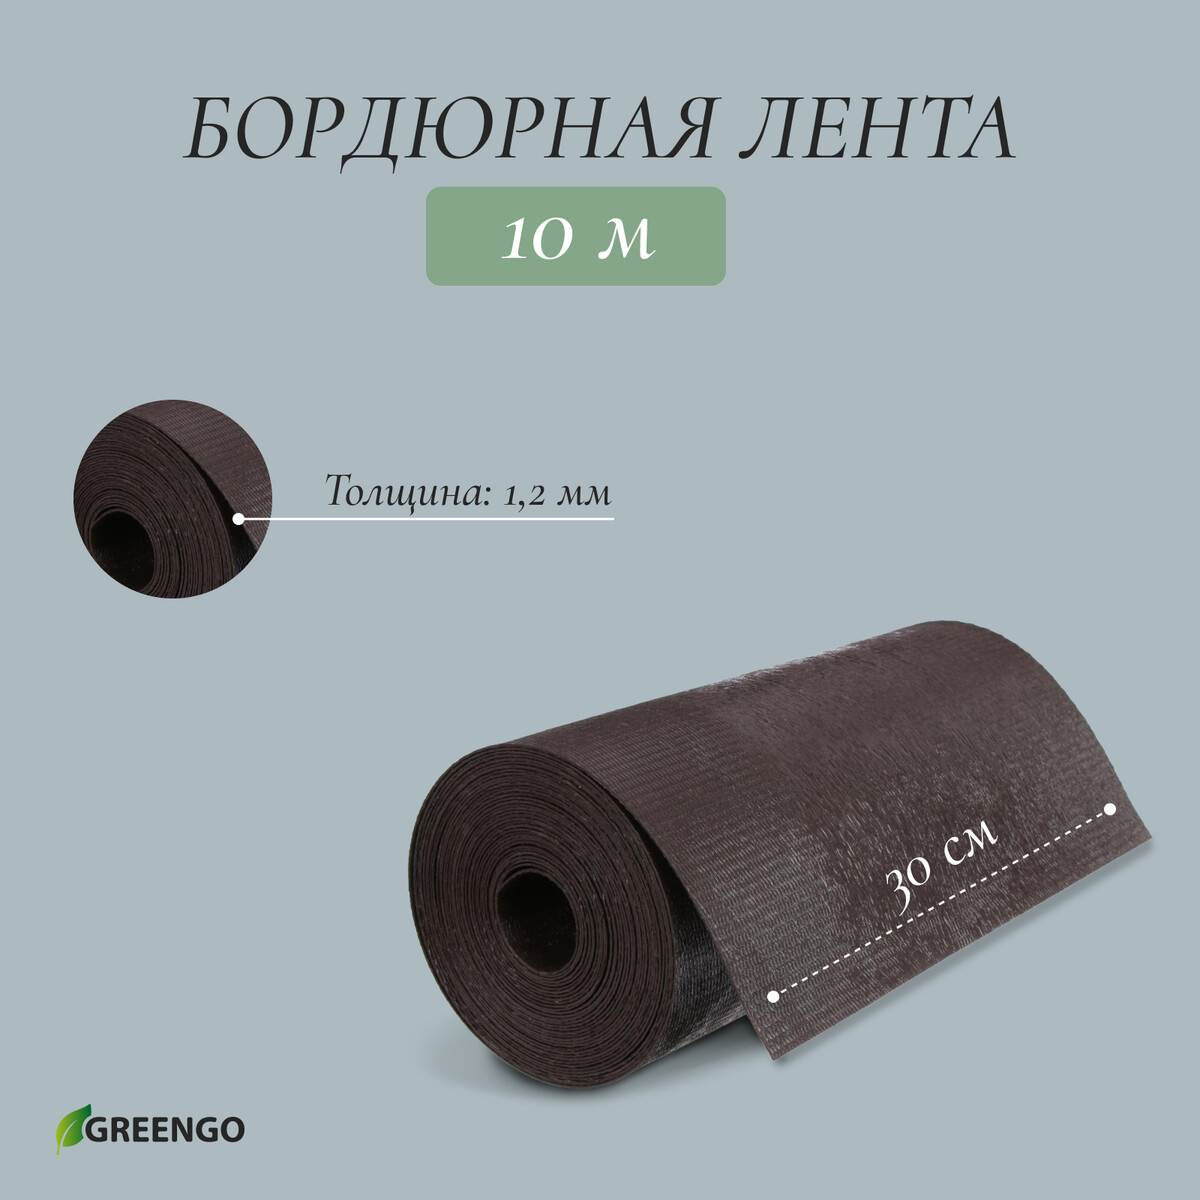 Лента бордюрная, 0.3 × 10 м, толщина 1.2 мм, пластиковая, коричневая, greengo лента бордюрная 0 2 × 9 м толщина 1 2 мм пластиковая фигурная коричневая greengo